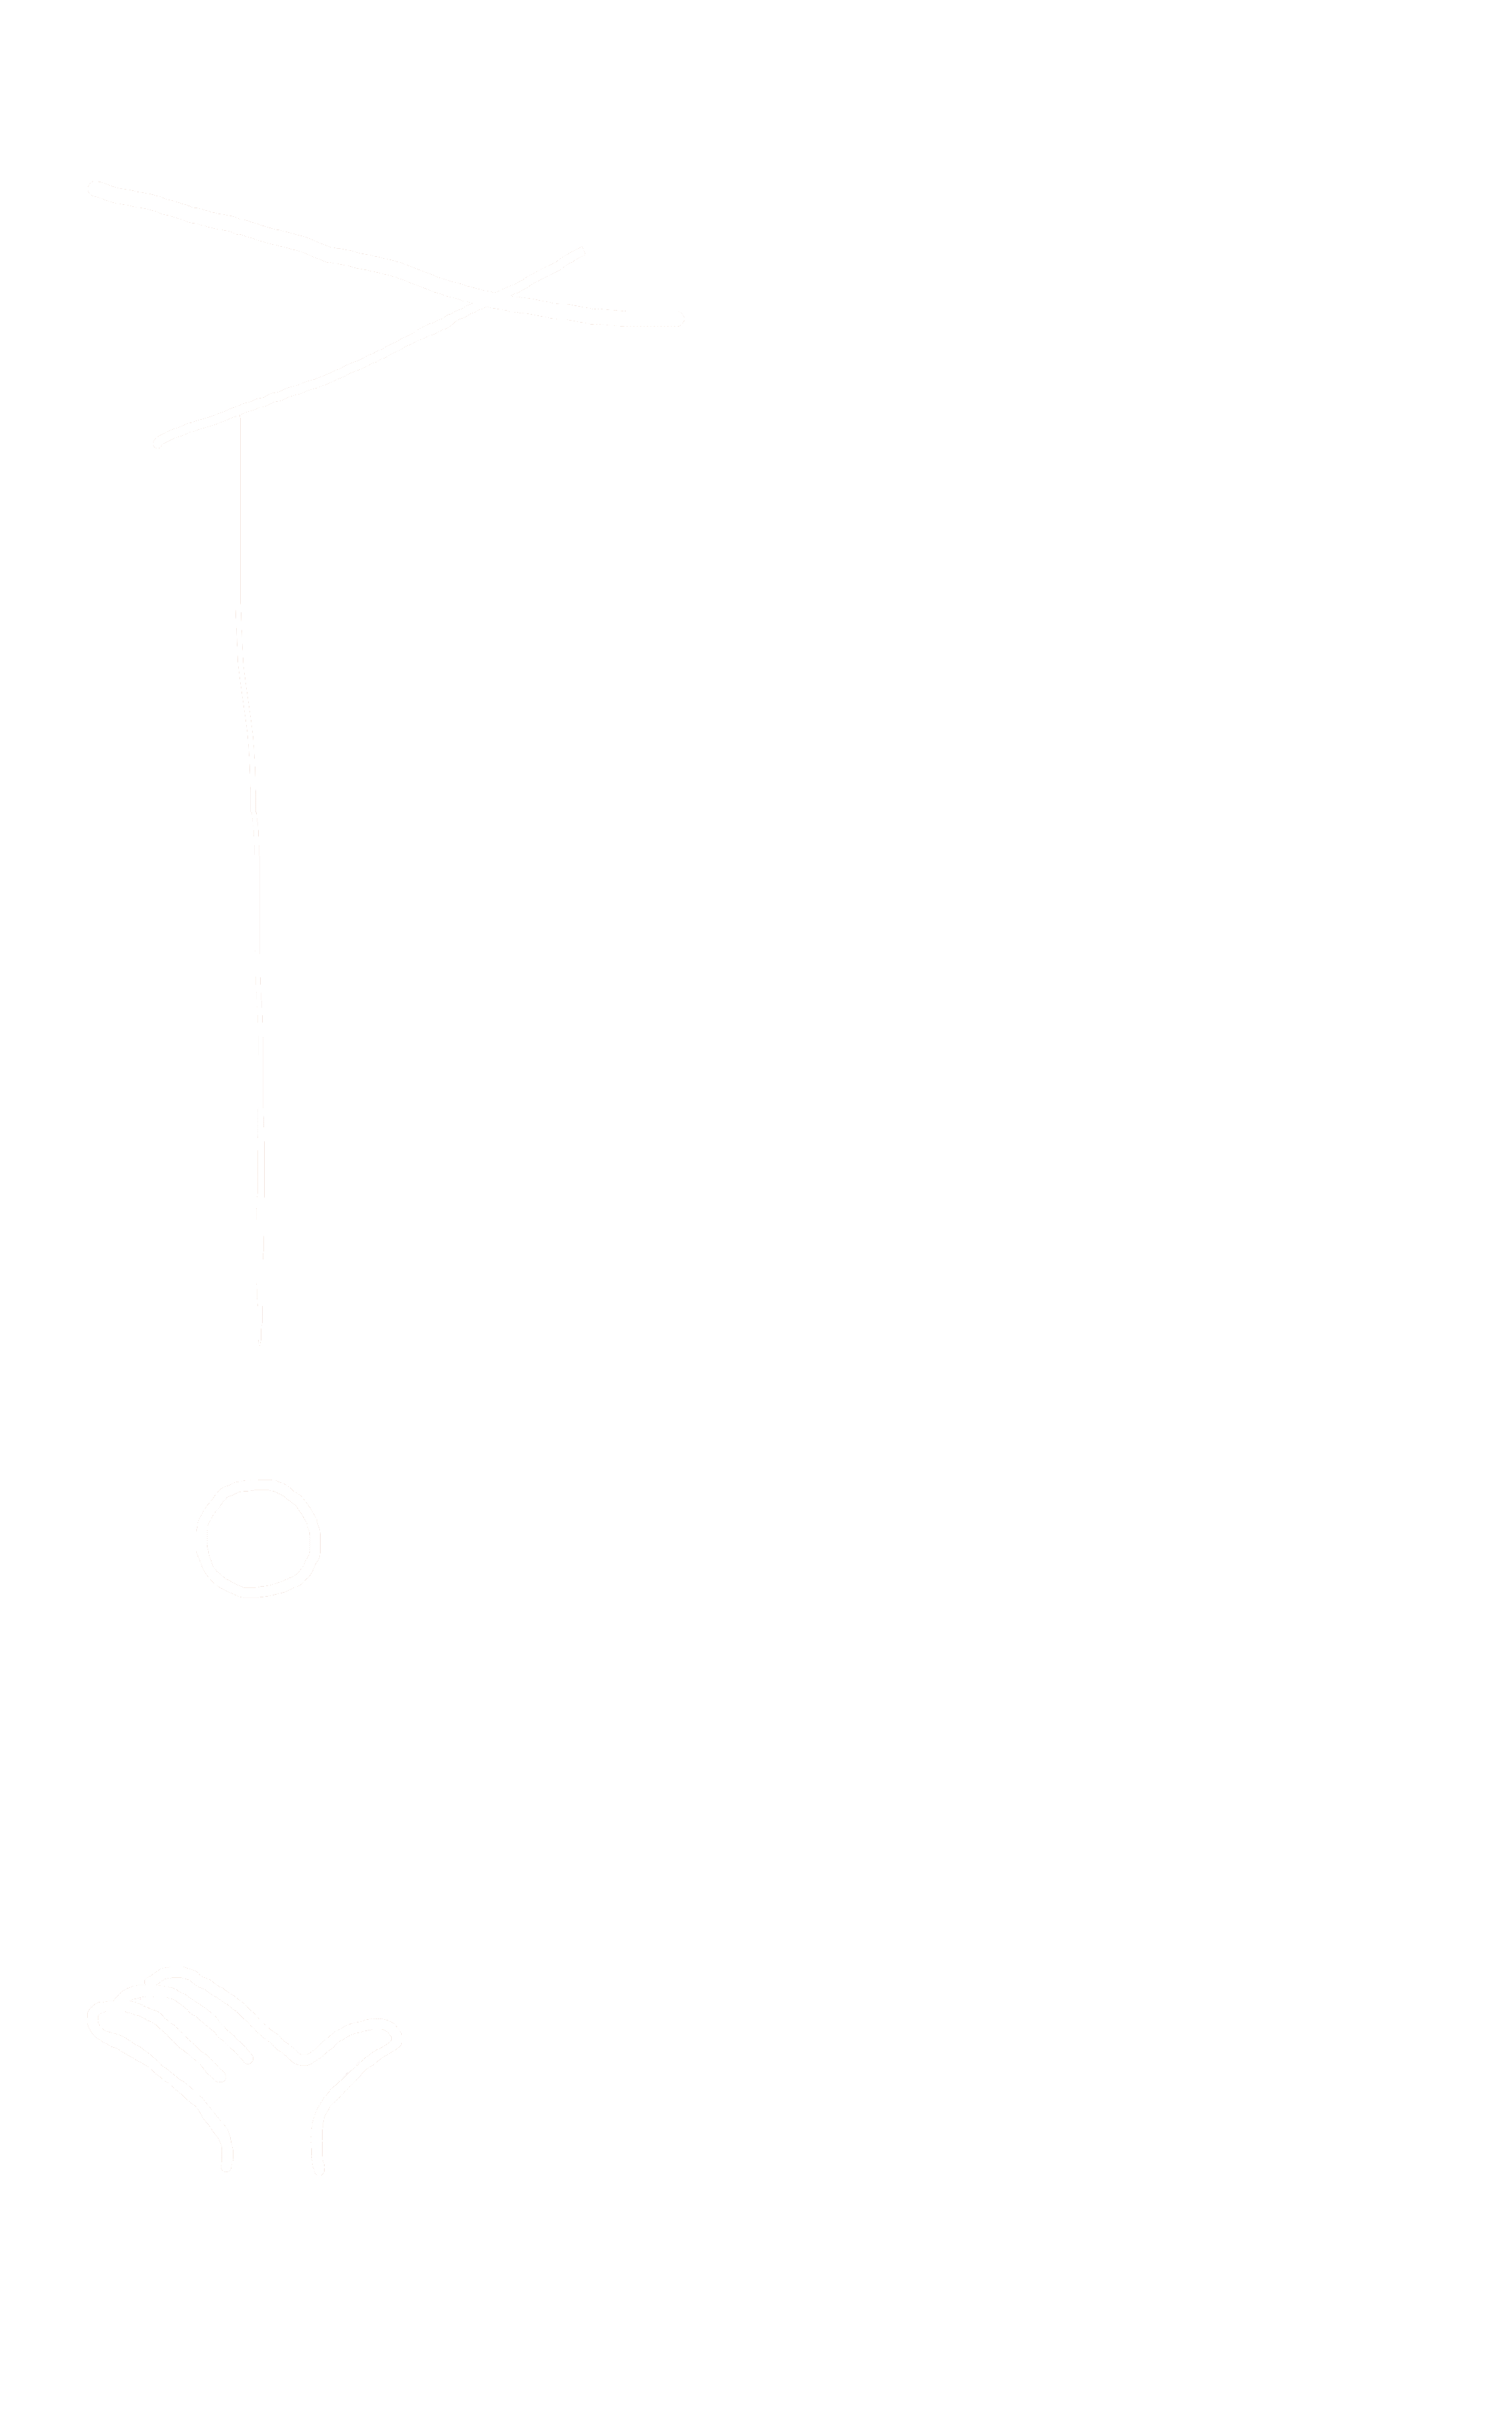 (c) Les-arts-pitres.com